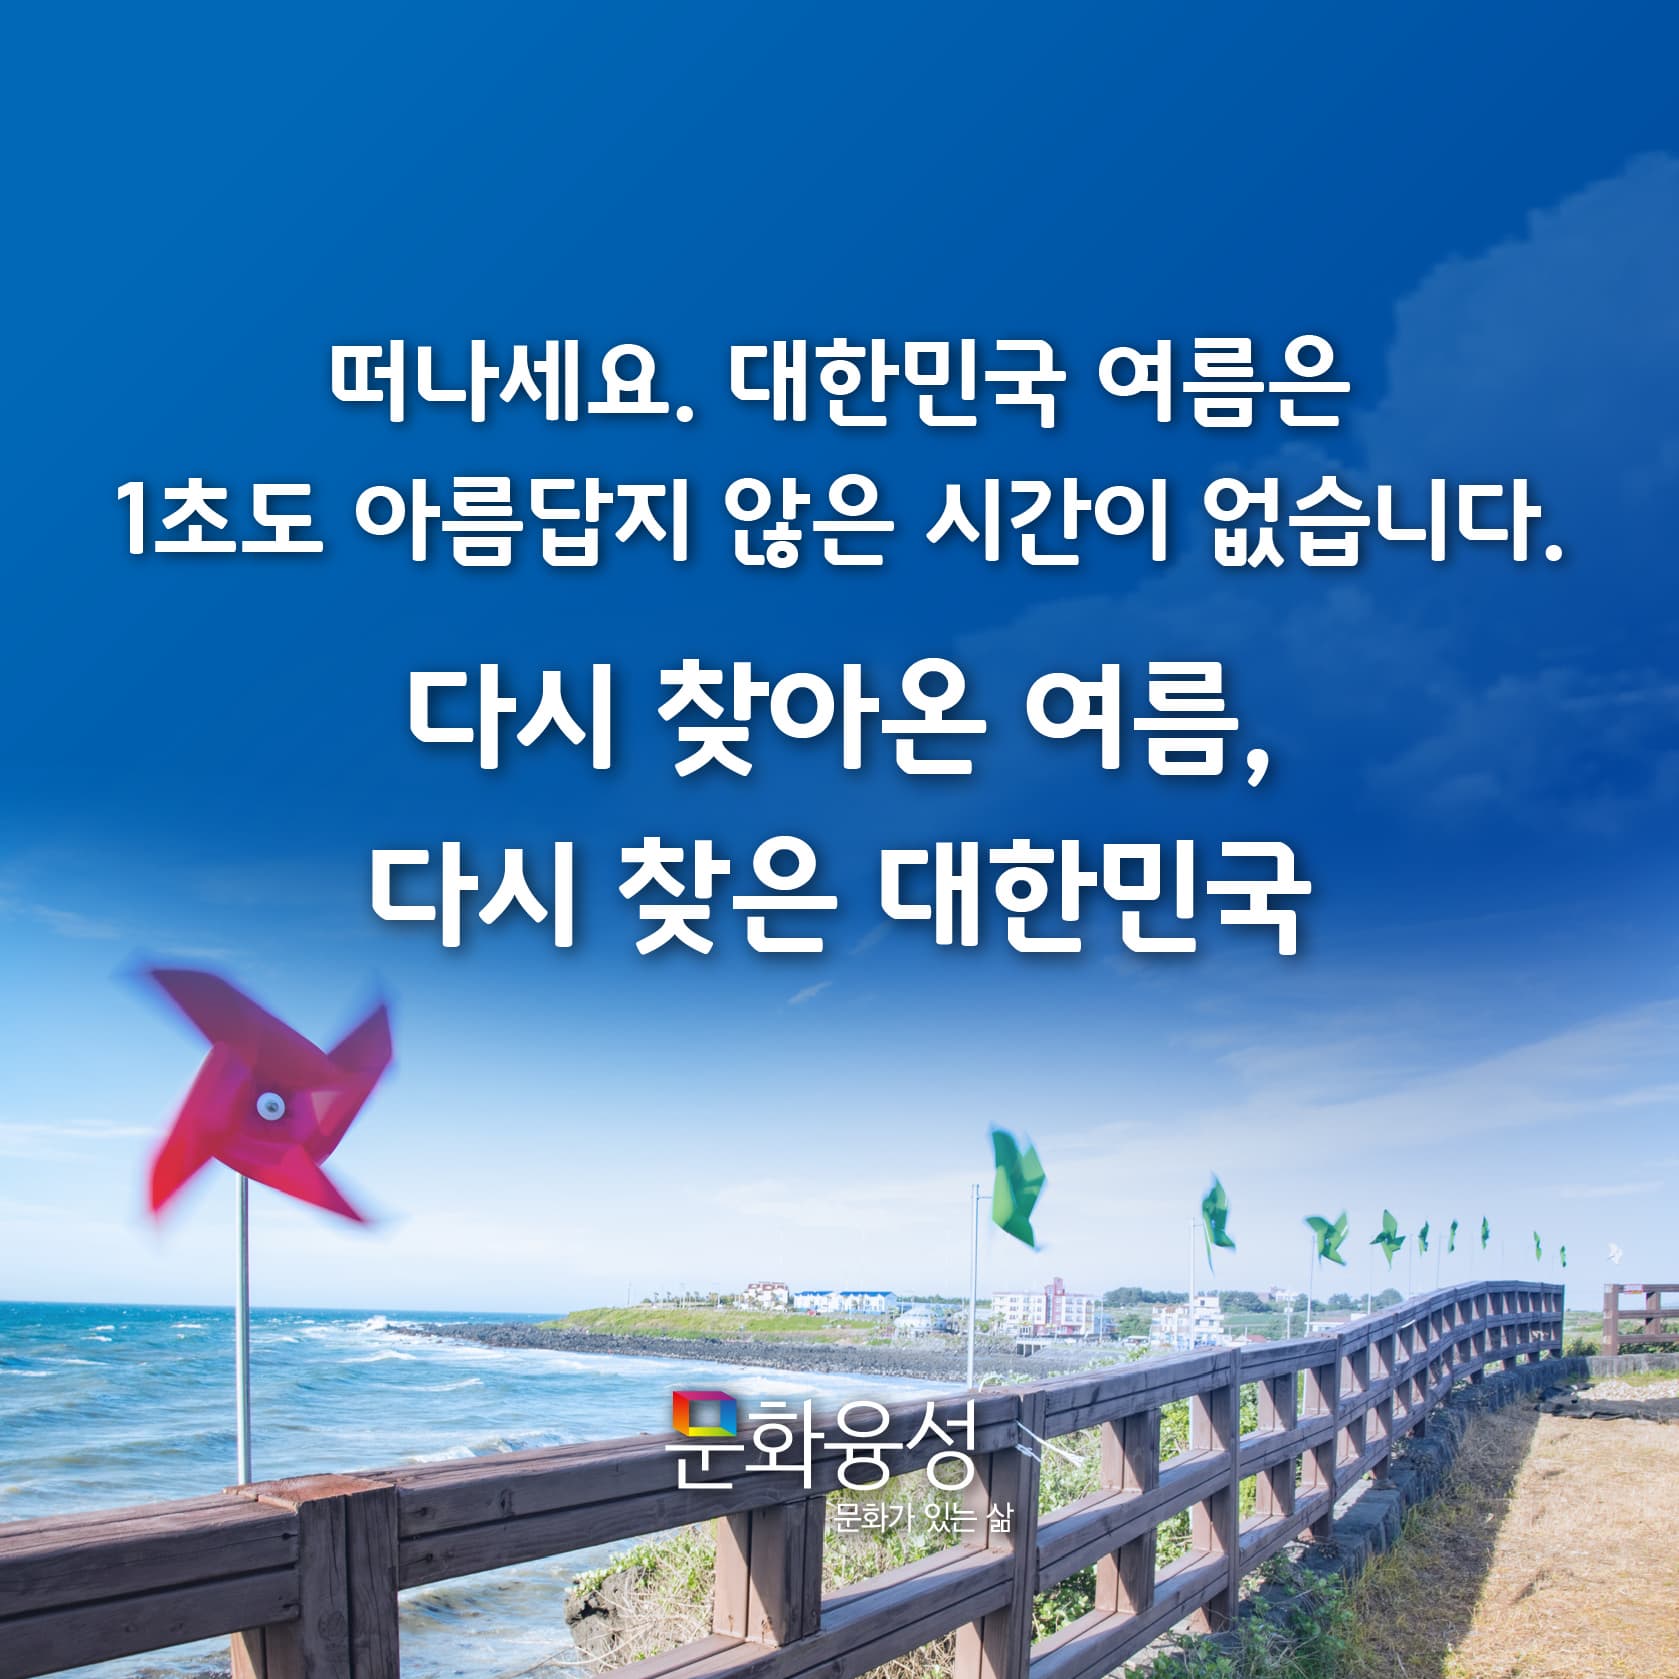 떠나세요. 대한민국 여름은 1초도 아름답지 않은 시간이 없습니다. 다시 찾아온 여름, 다시찾은 대한민국 문화융성 문화가 있는 삶